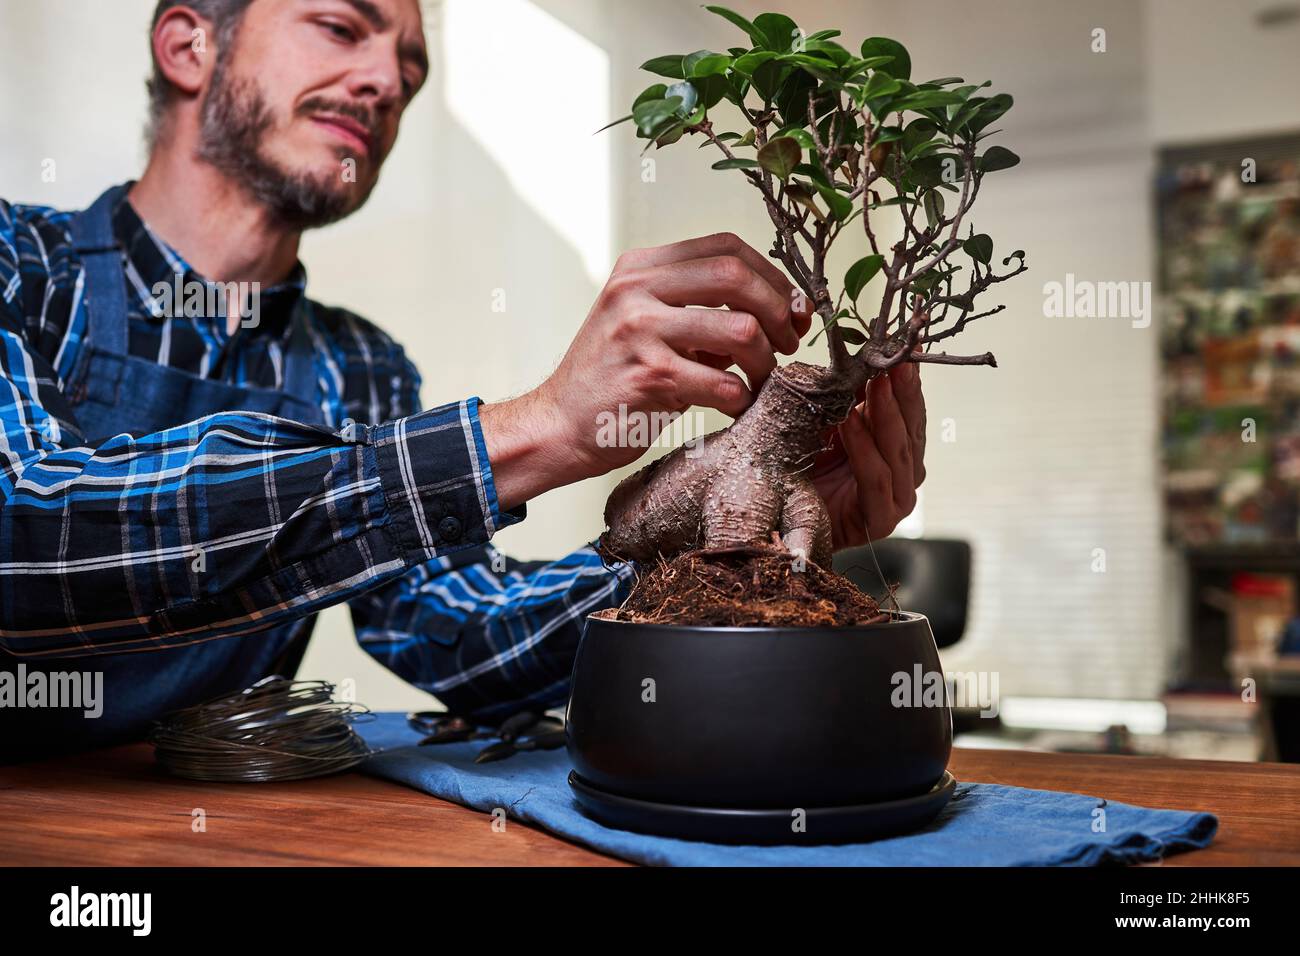 https://c8.alamy.com/compes/2hhk8f5/jardinero-masculino-enfocado-poniendo-alambre-en-la-rama-del-bonsai-para-formar-la-forma-del-arbol-mientras-que-trabaja-en-invernadero-2hhk8f5.jpg